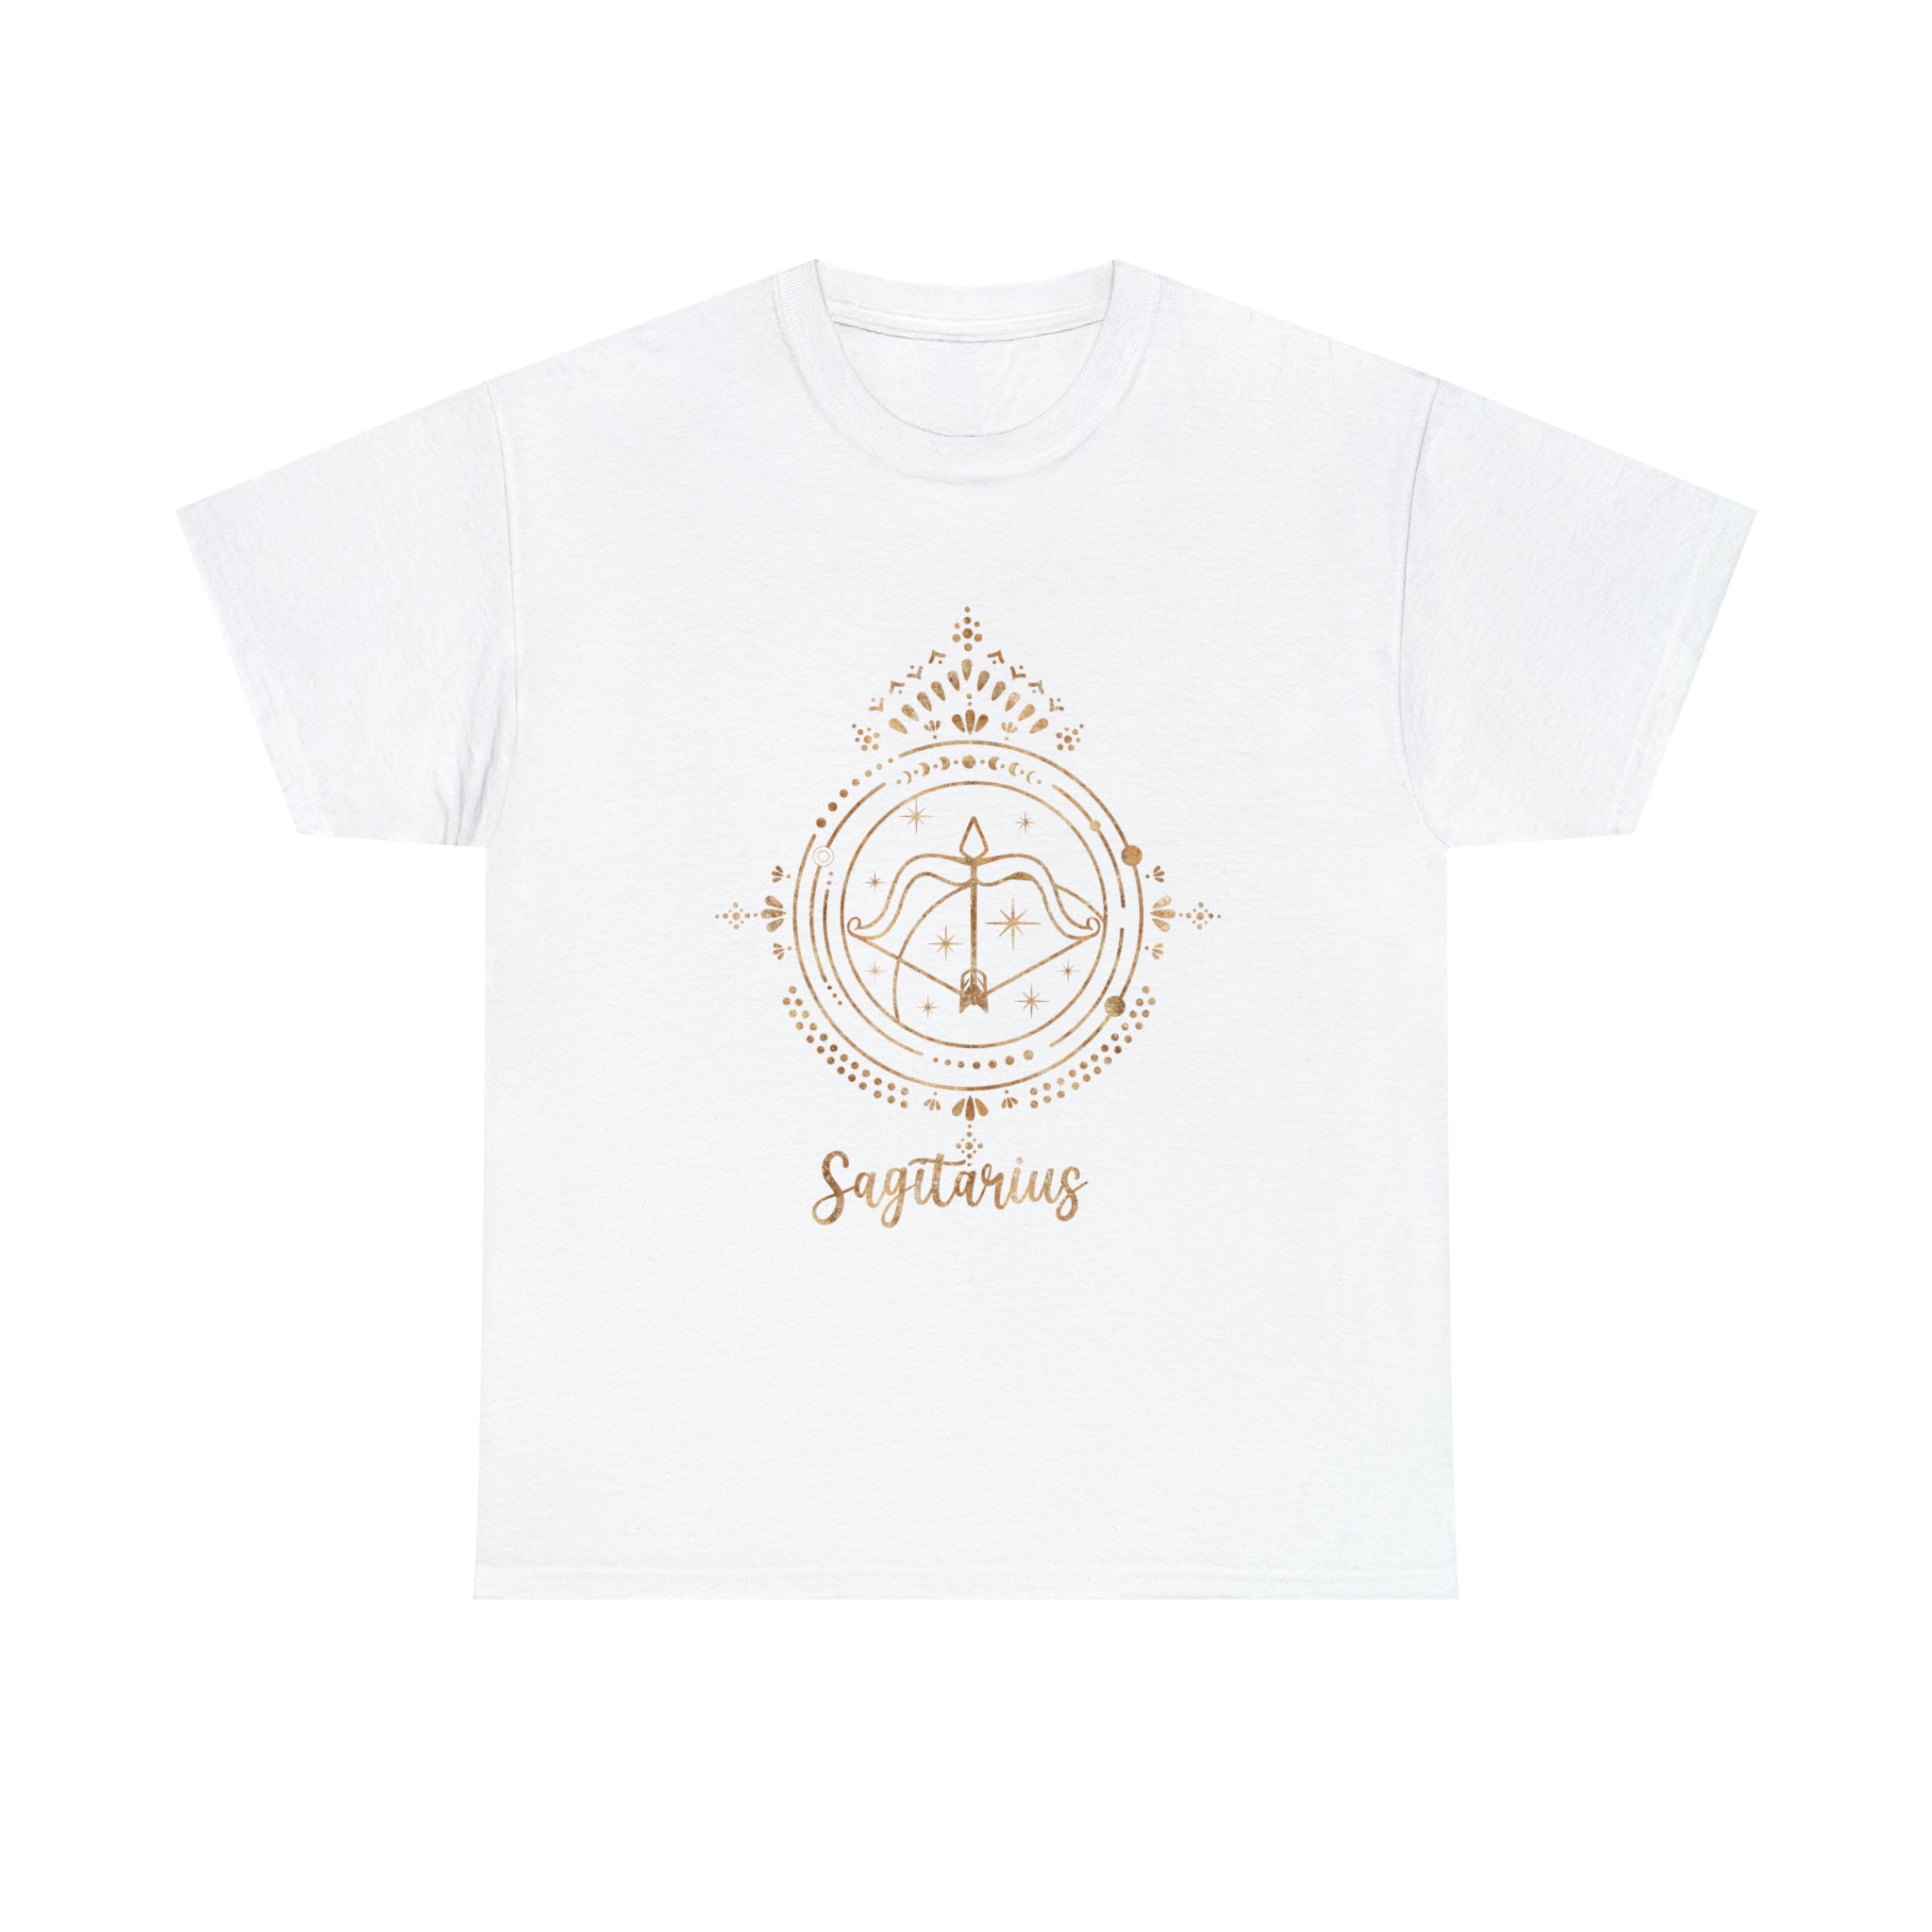 An intelligent Sagittarians T-Shirt featuring an image of an eye and the word "spirit.